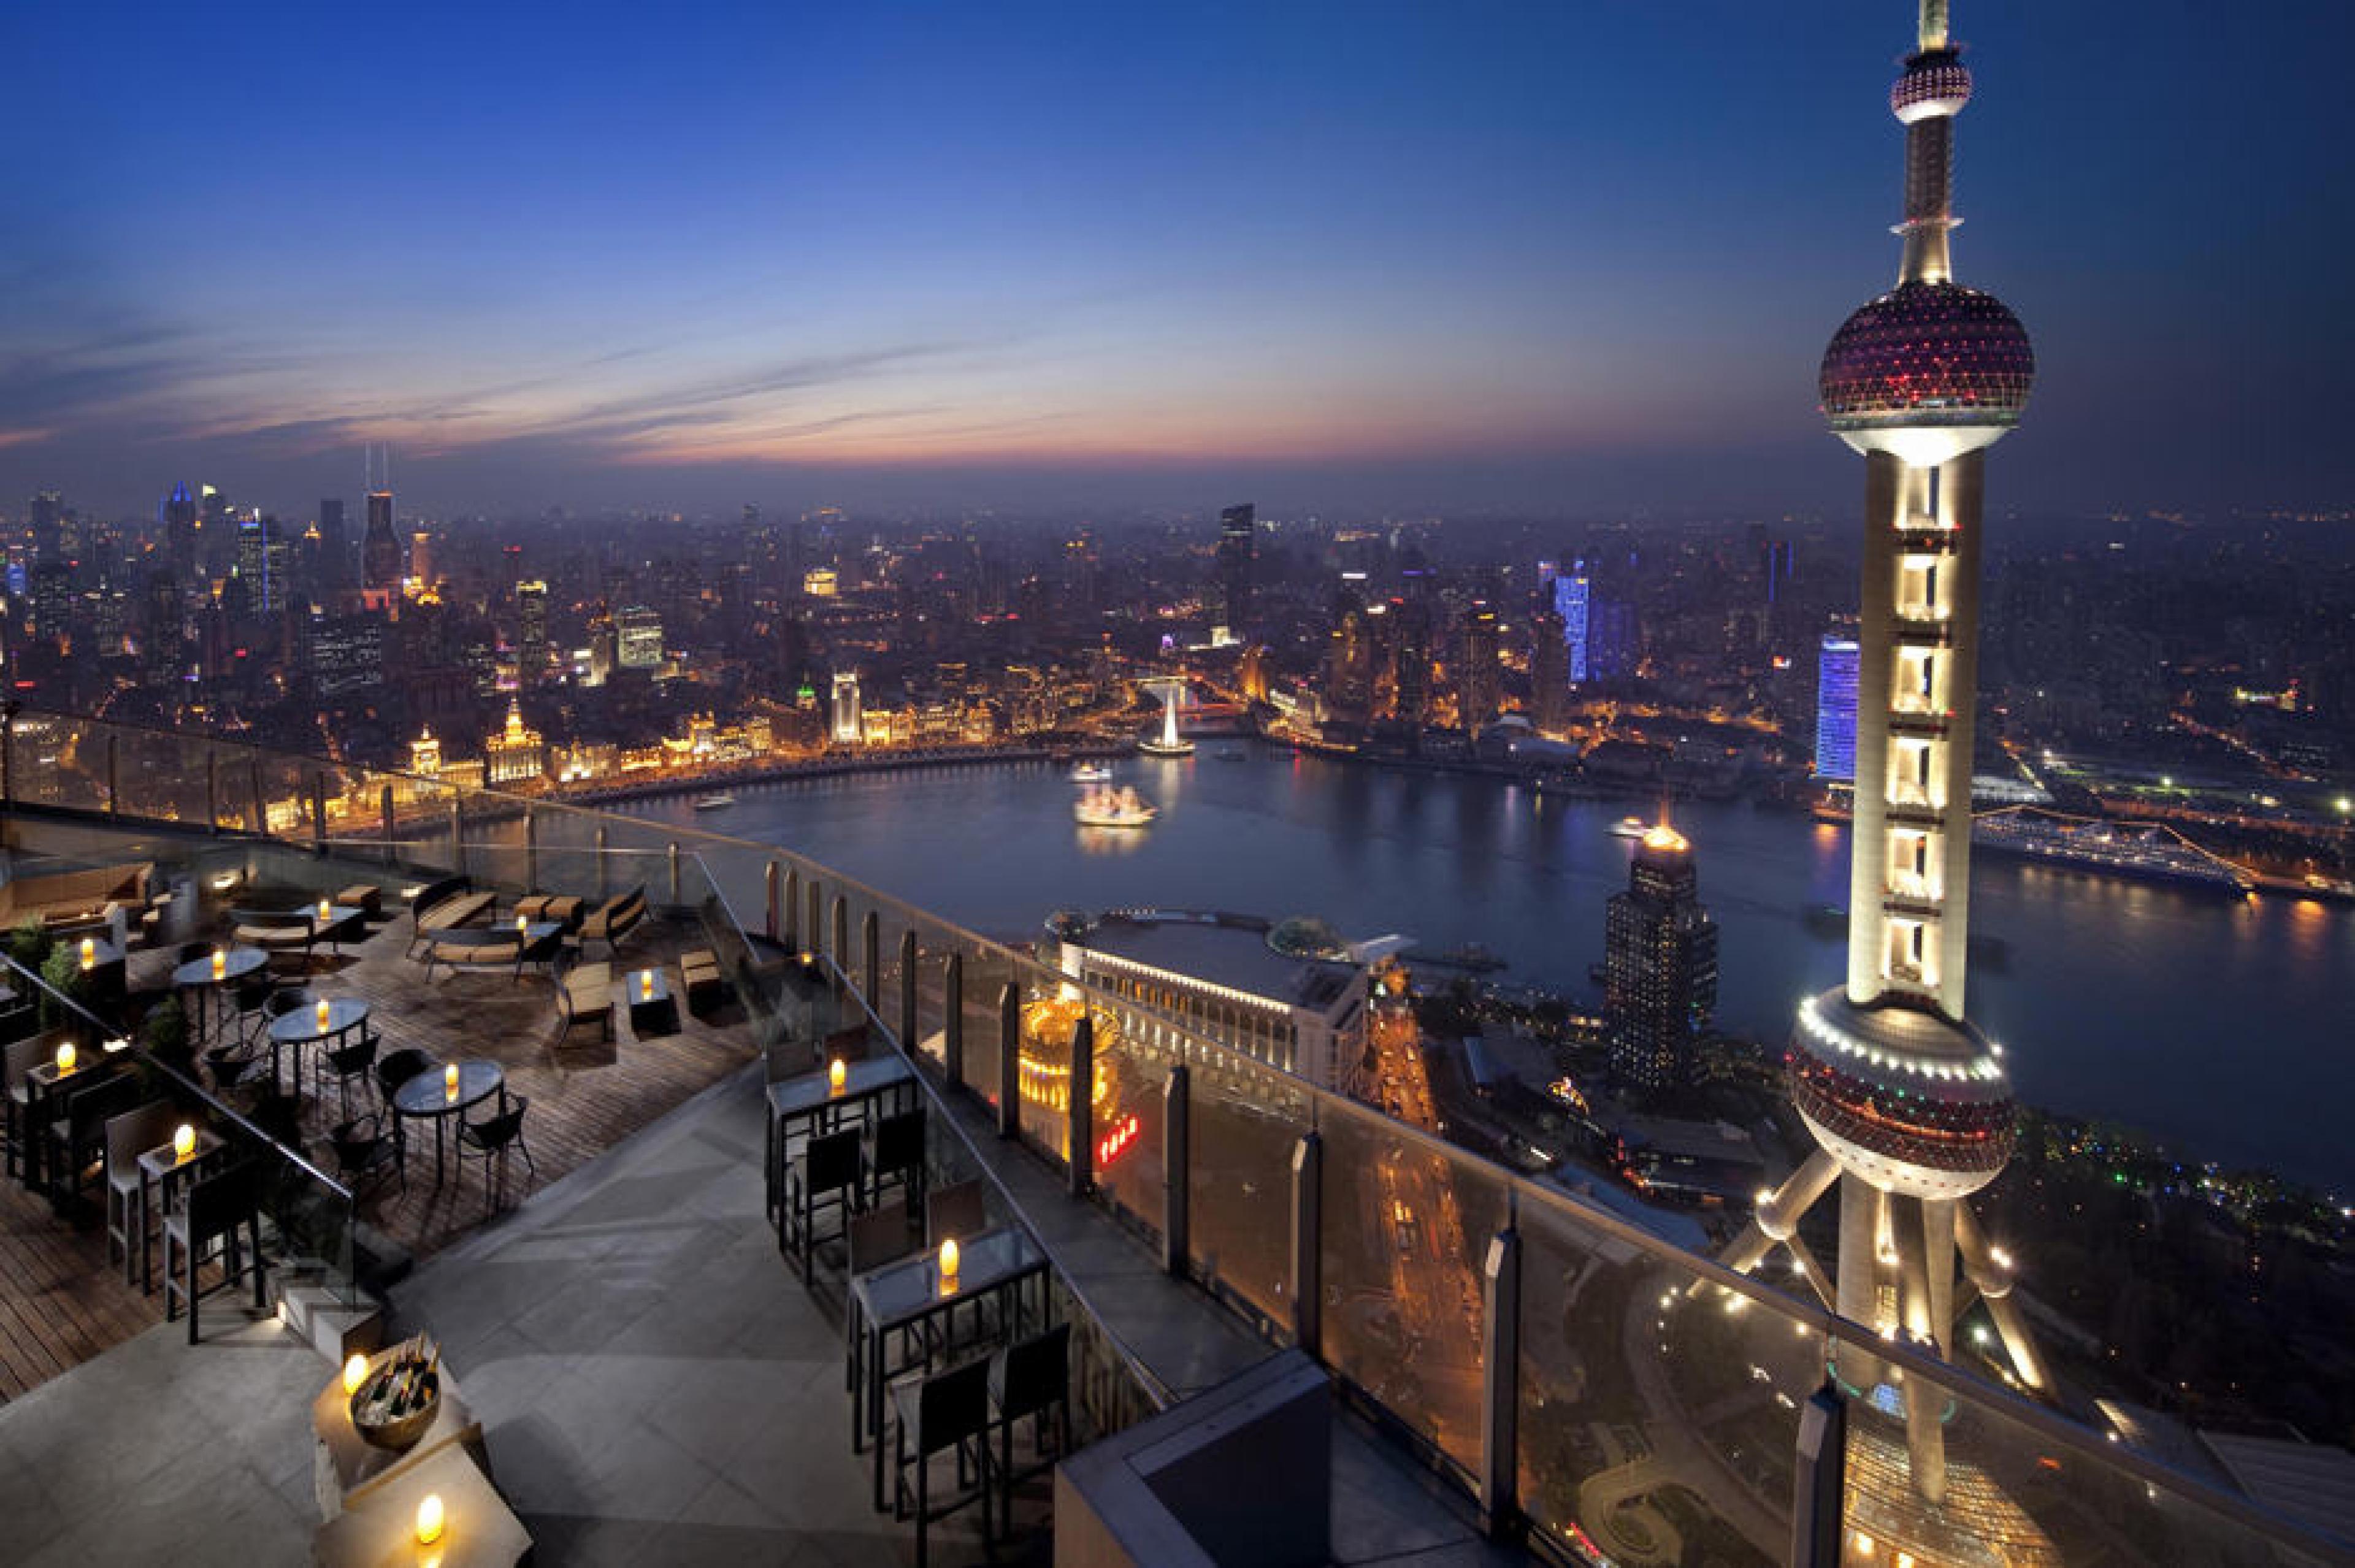 Aerial View - Flair Rooftop Restaurant & Bar, Shanghai, China